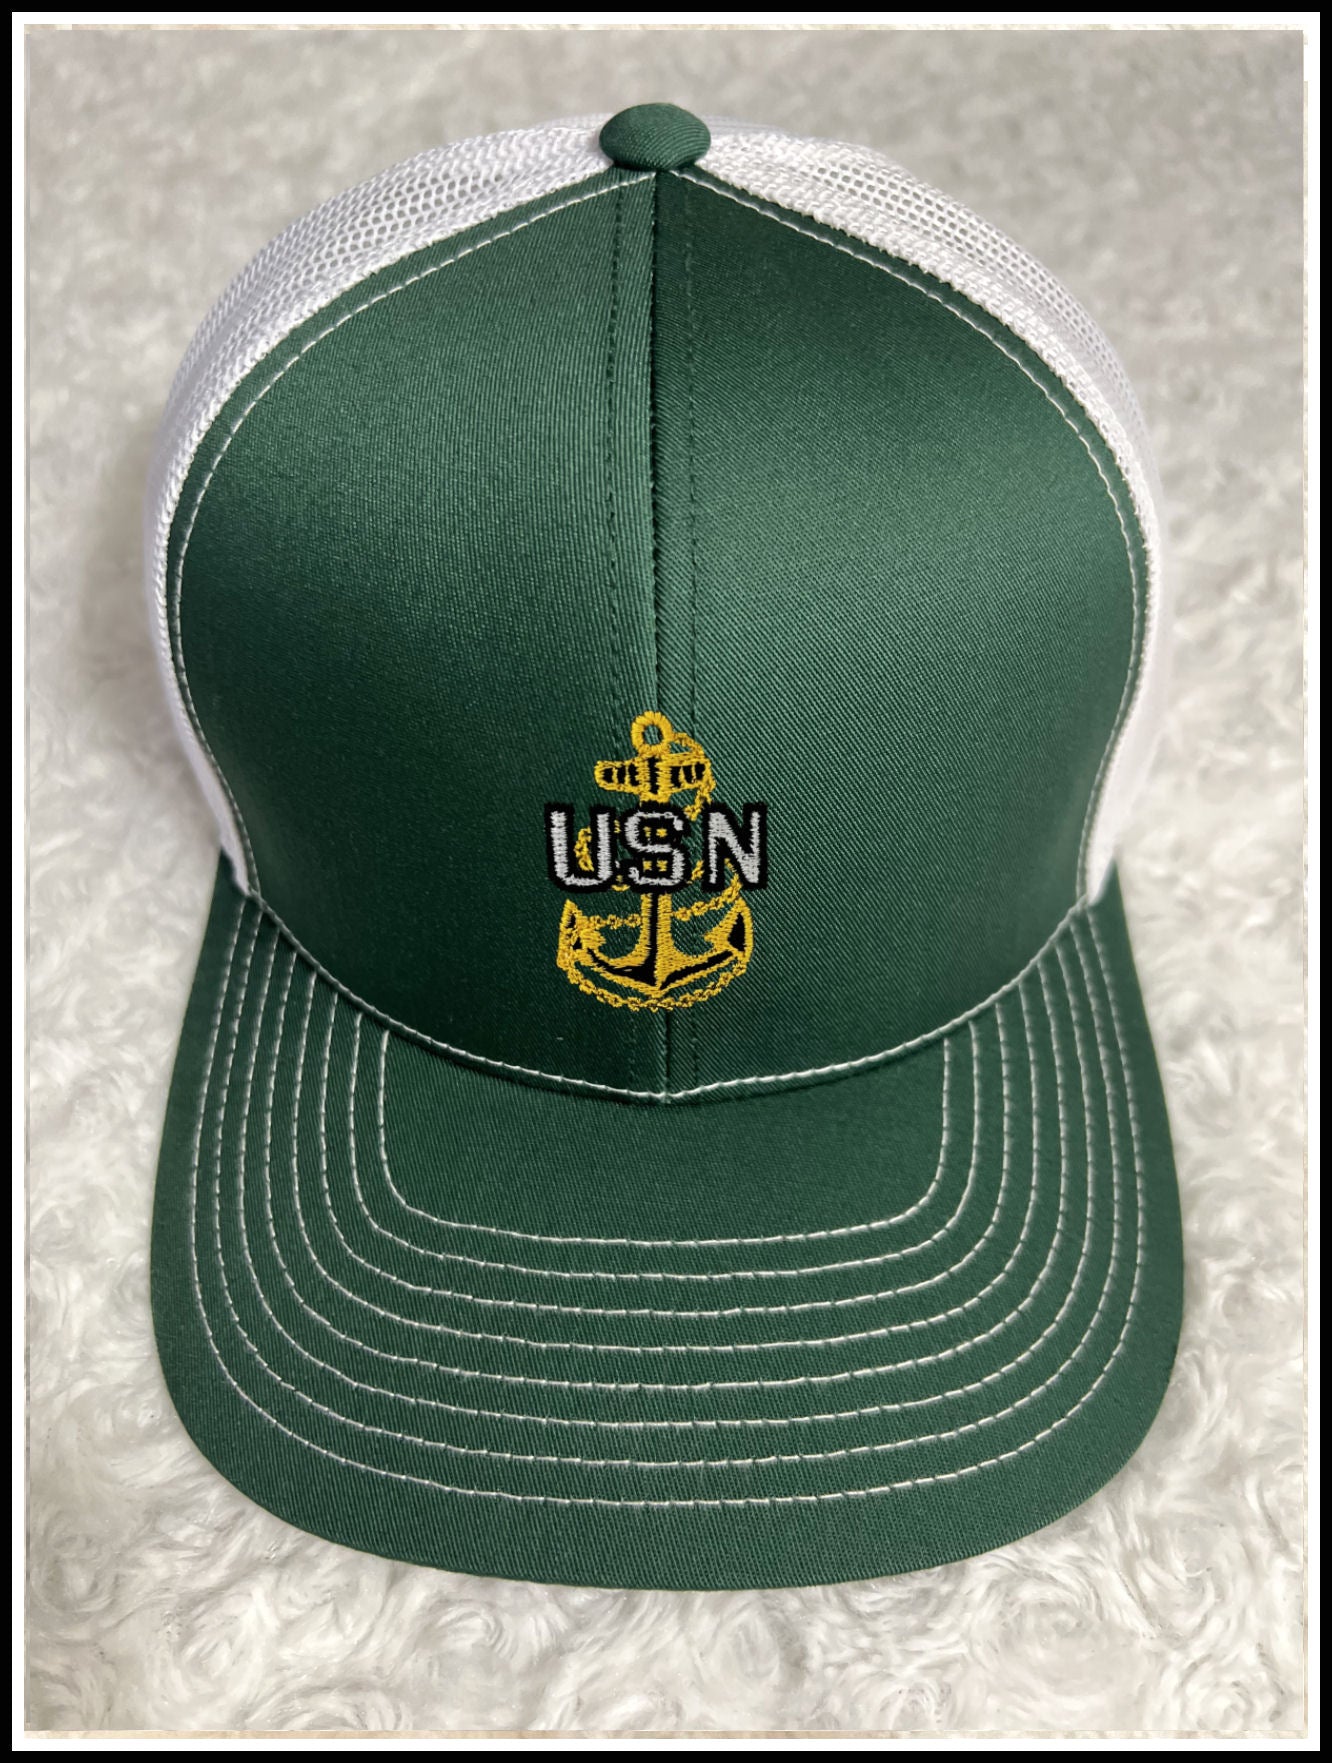 Dark Green & White CPO Trucker Hat